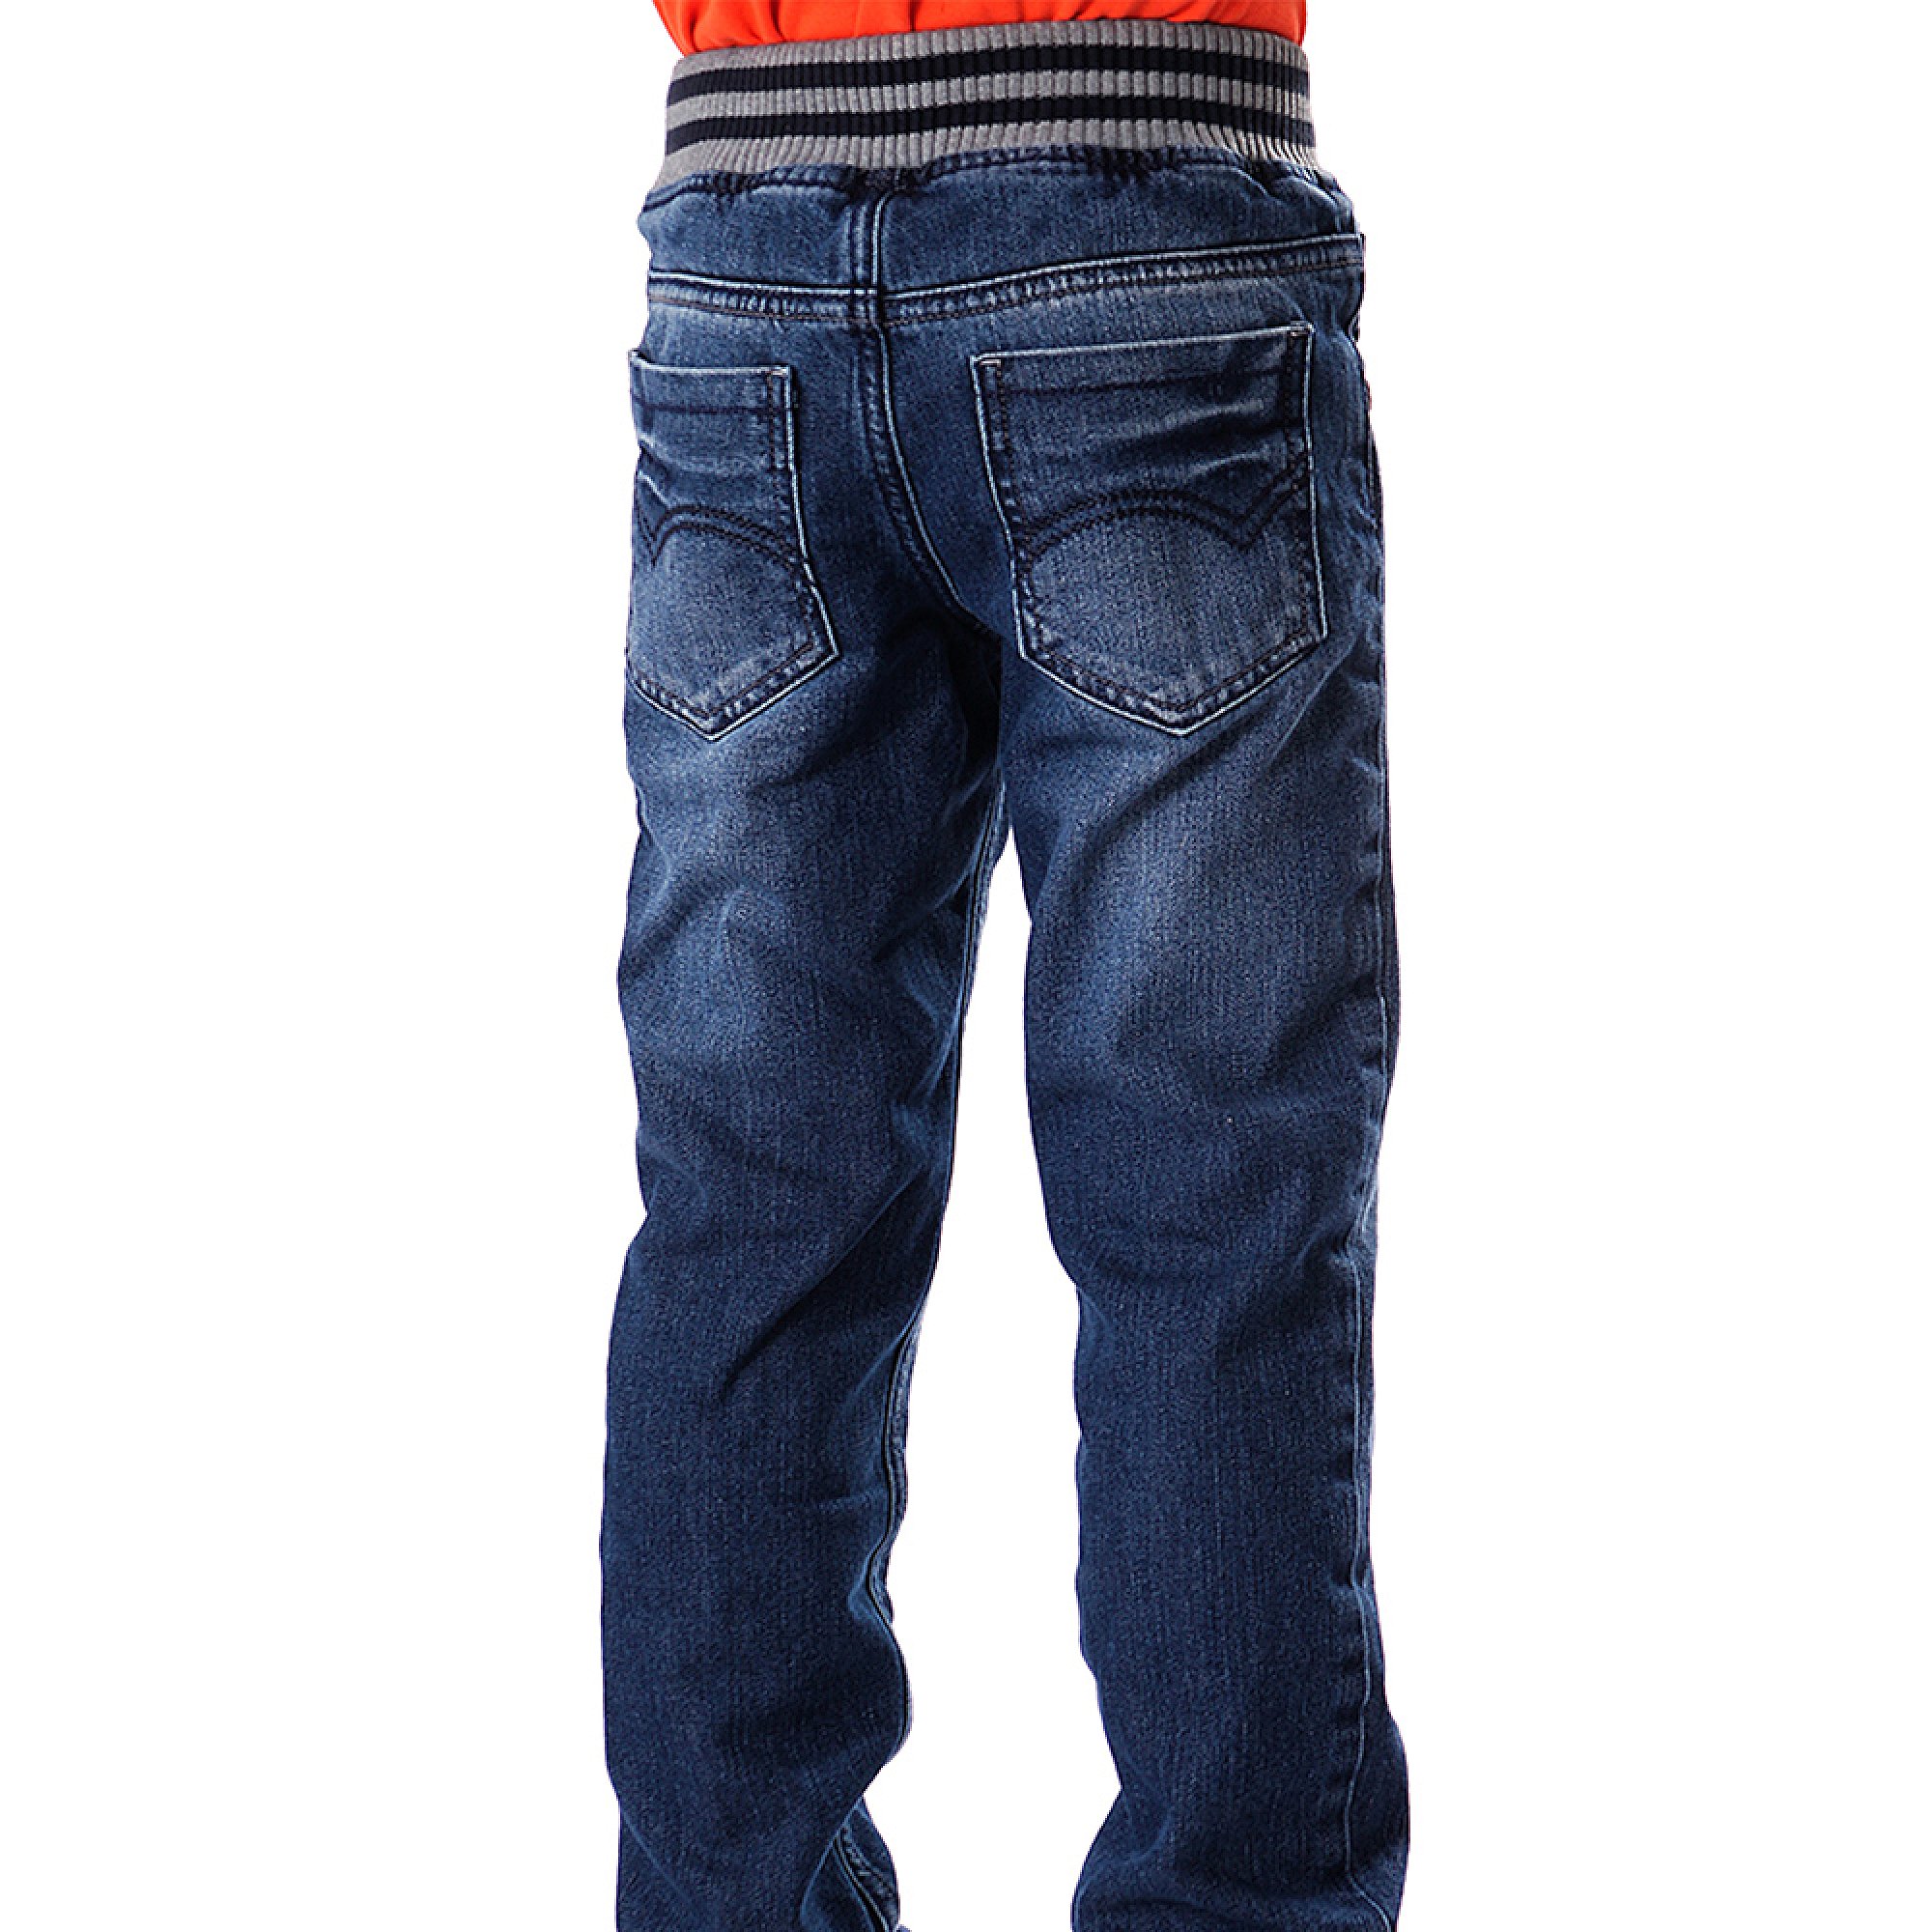 Теплые джинсы для мальчика LIGAS